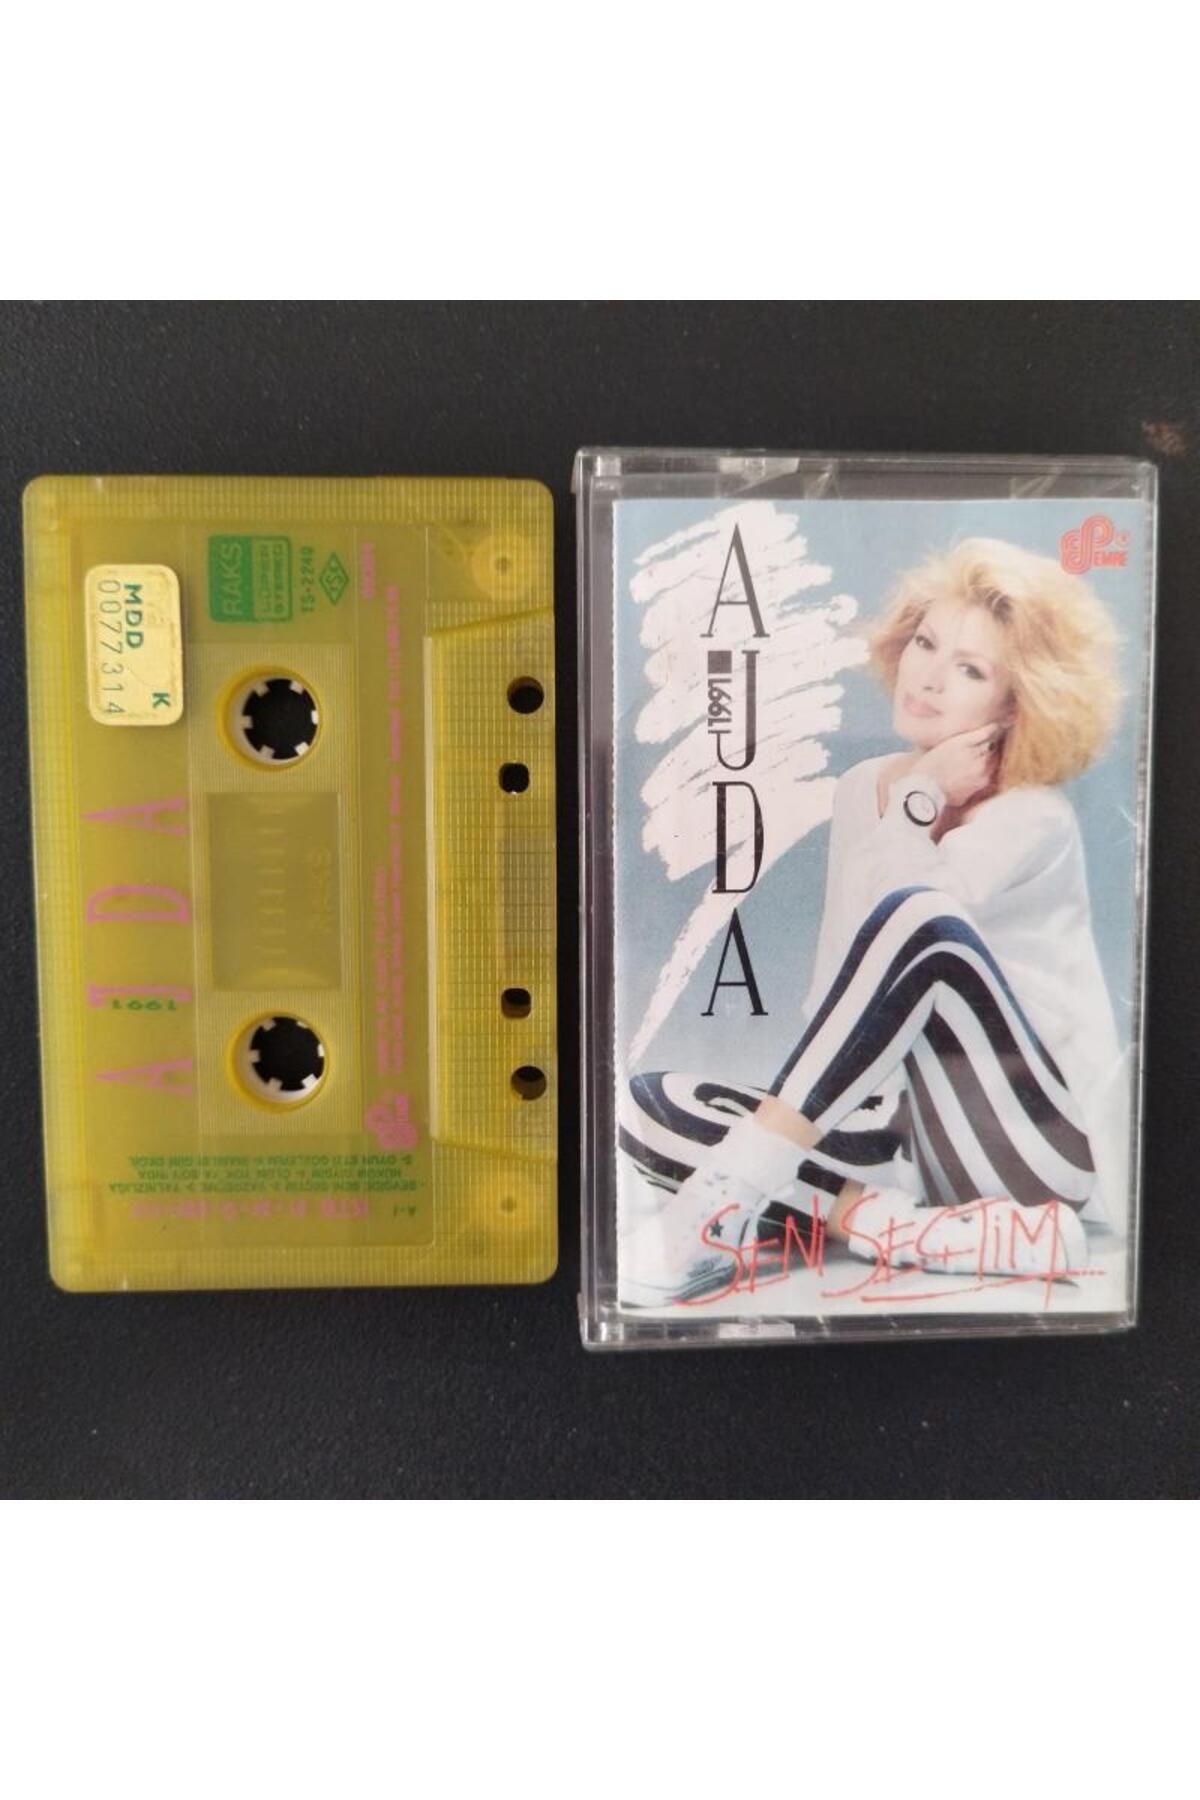 Cassette Ajda – Seni Seçtim – 1991 Türkiye Basım Kaset Albüm 2. el